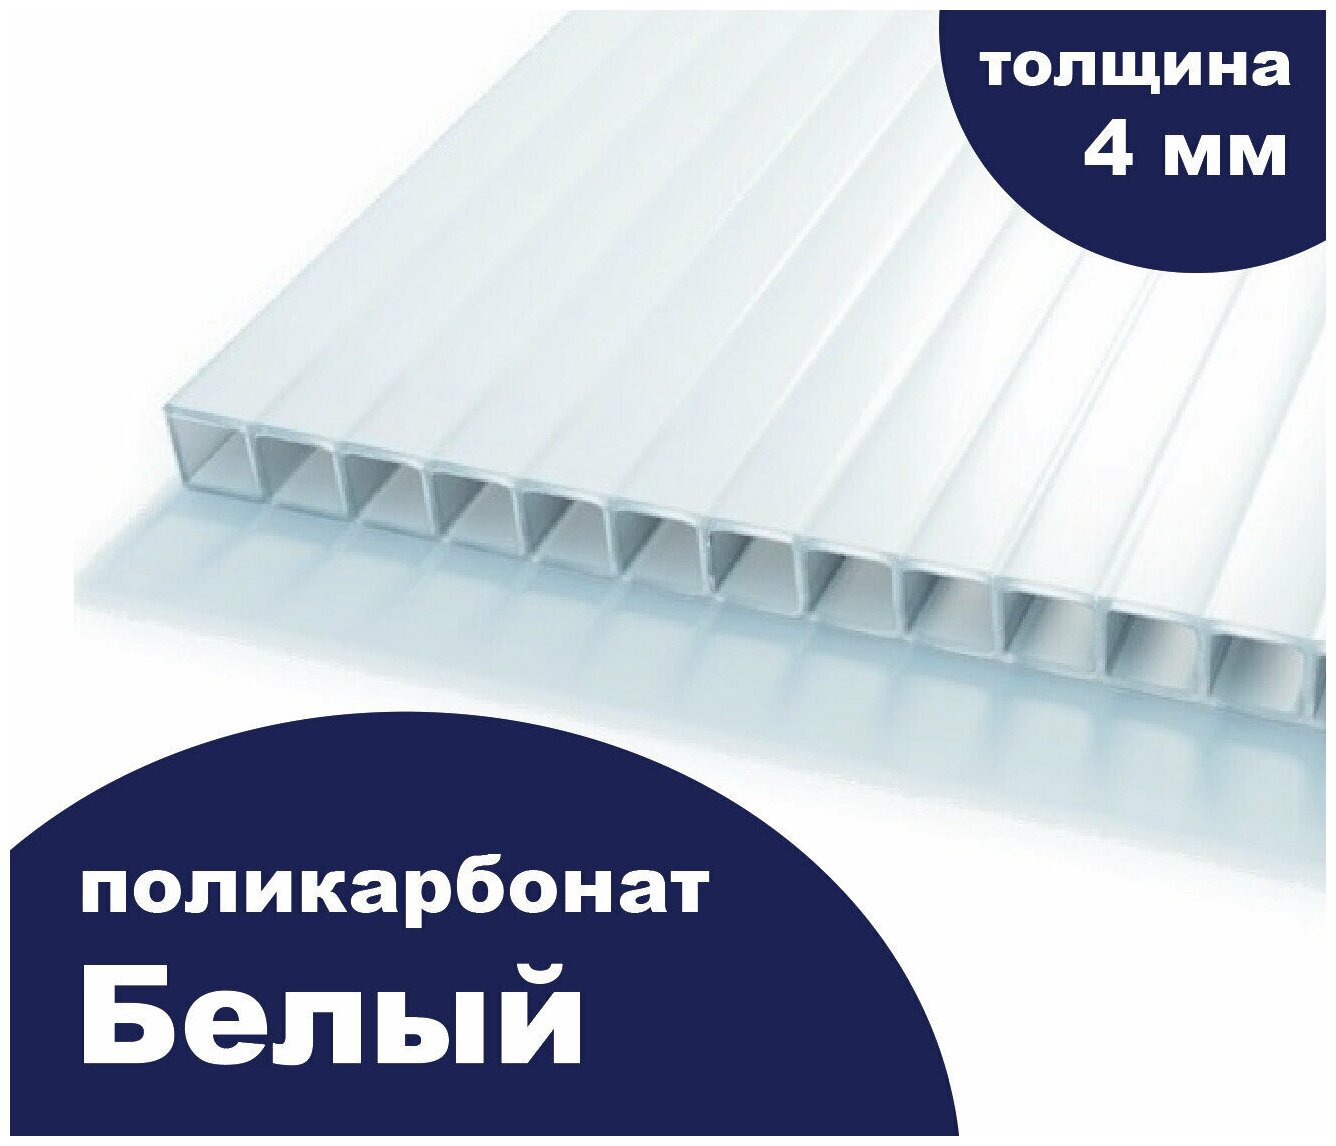 Сотовый поликарбонат цвет опал (белый рекламный), Ultramarin, 4 мм, 6 метров, 2 листа